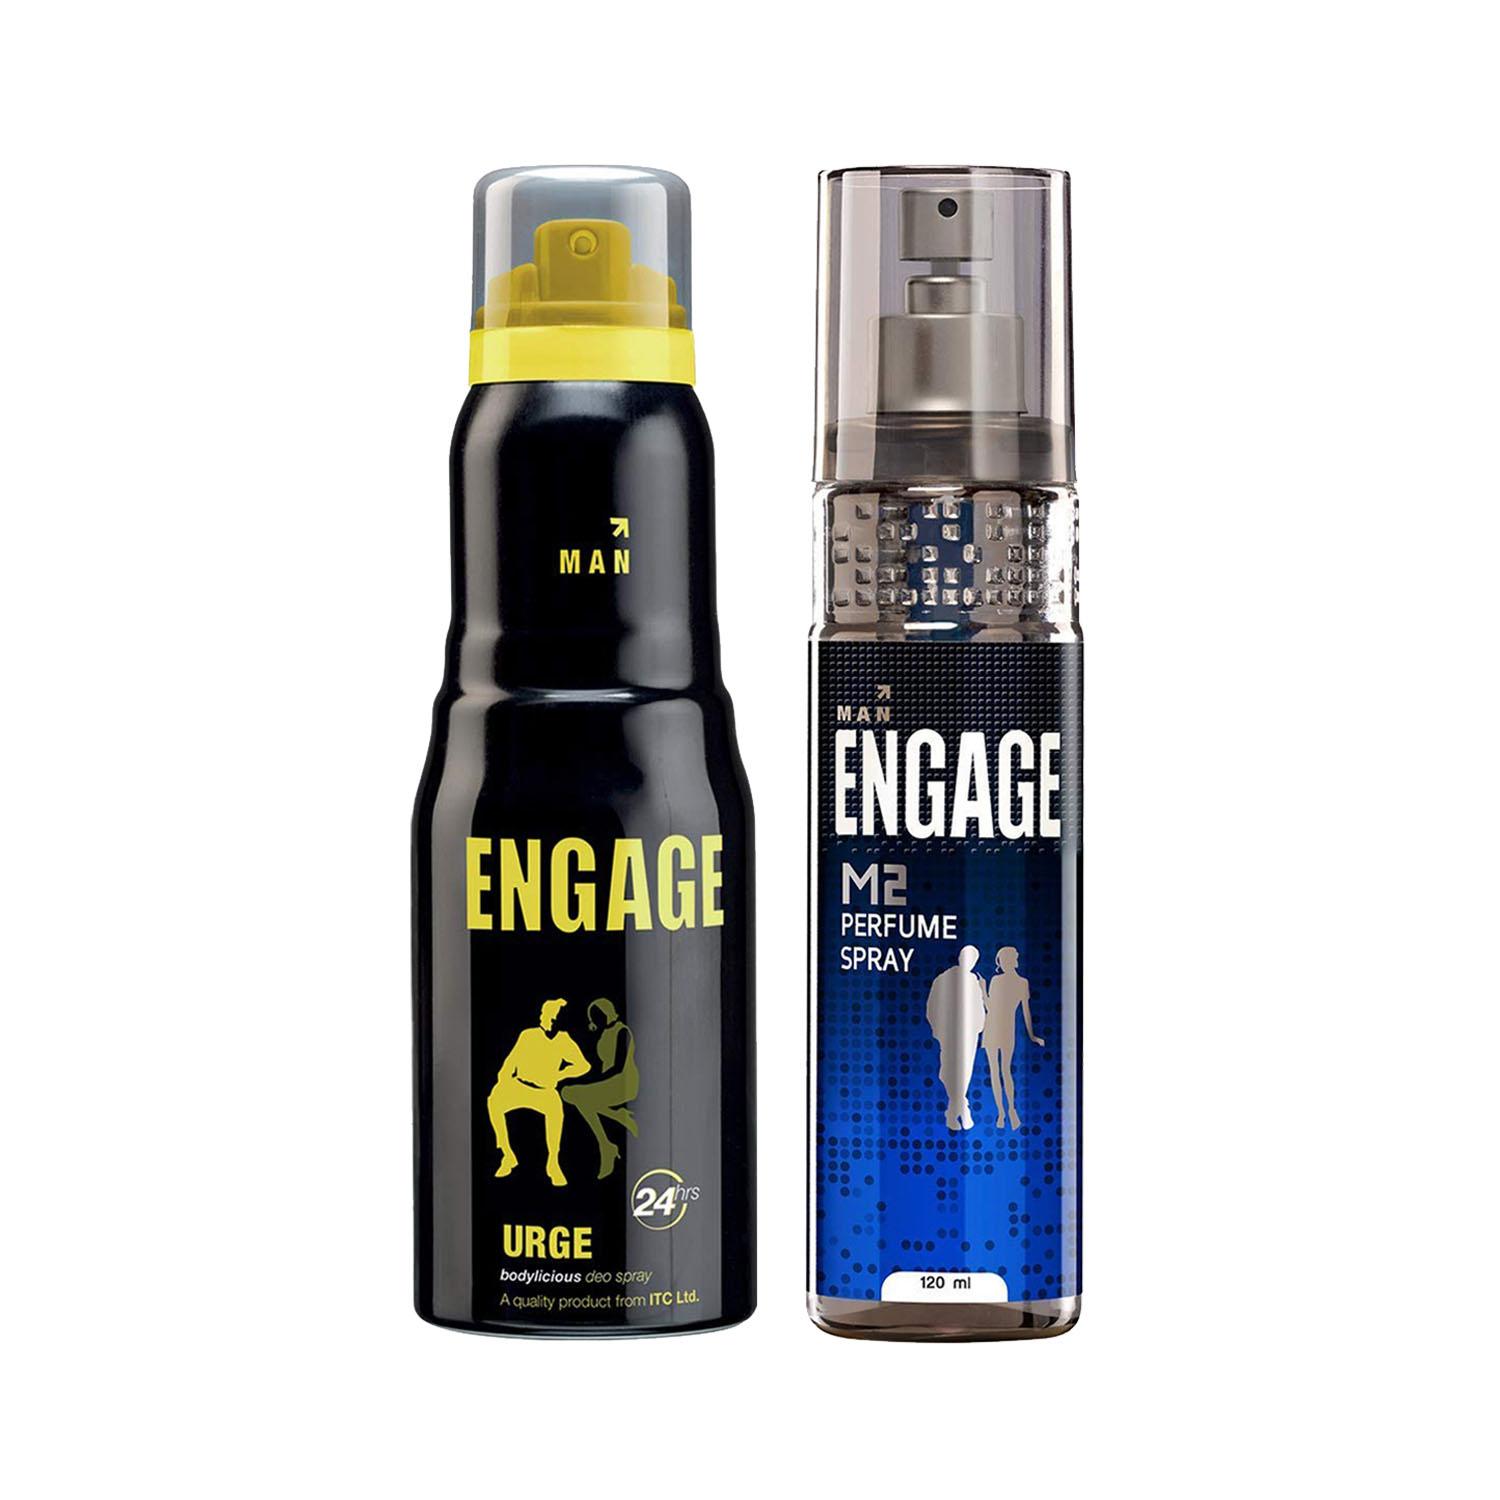 Engage | Engage Man Perfume & Deo M2 & Urge Combo